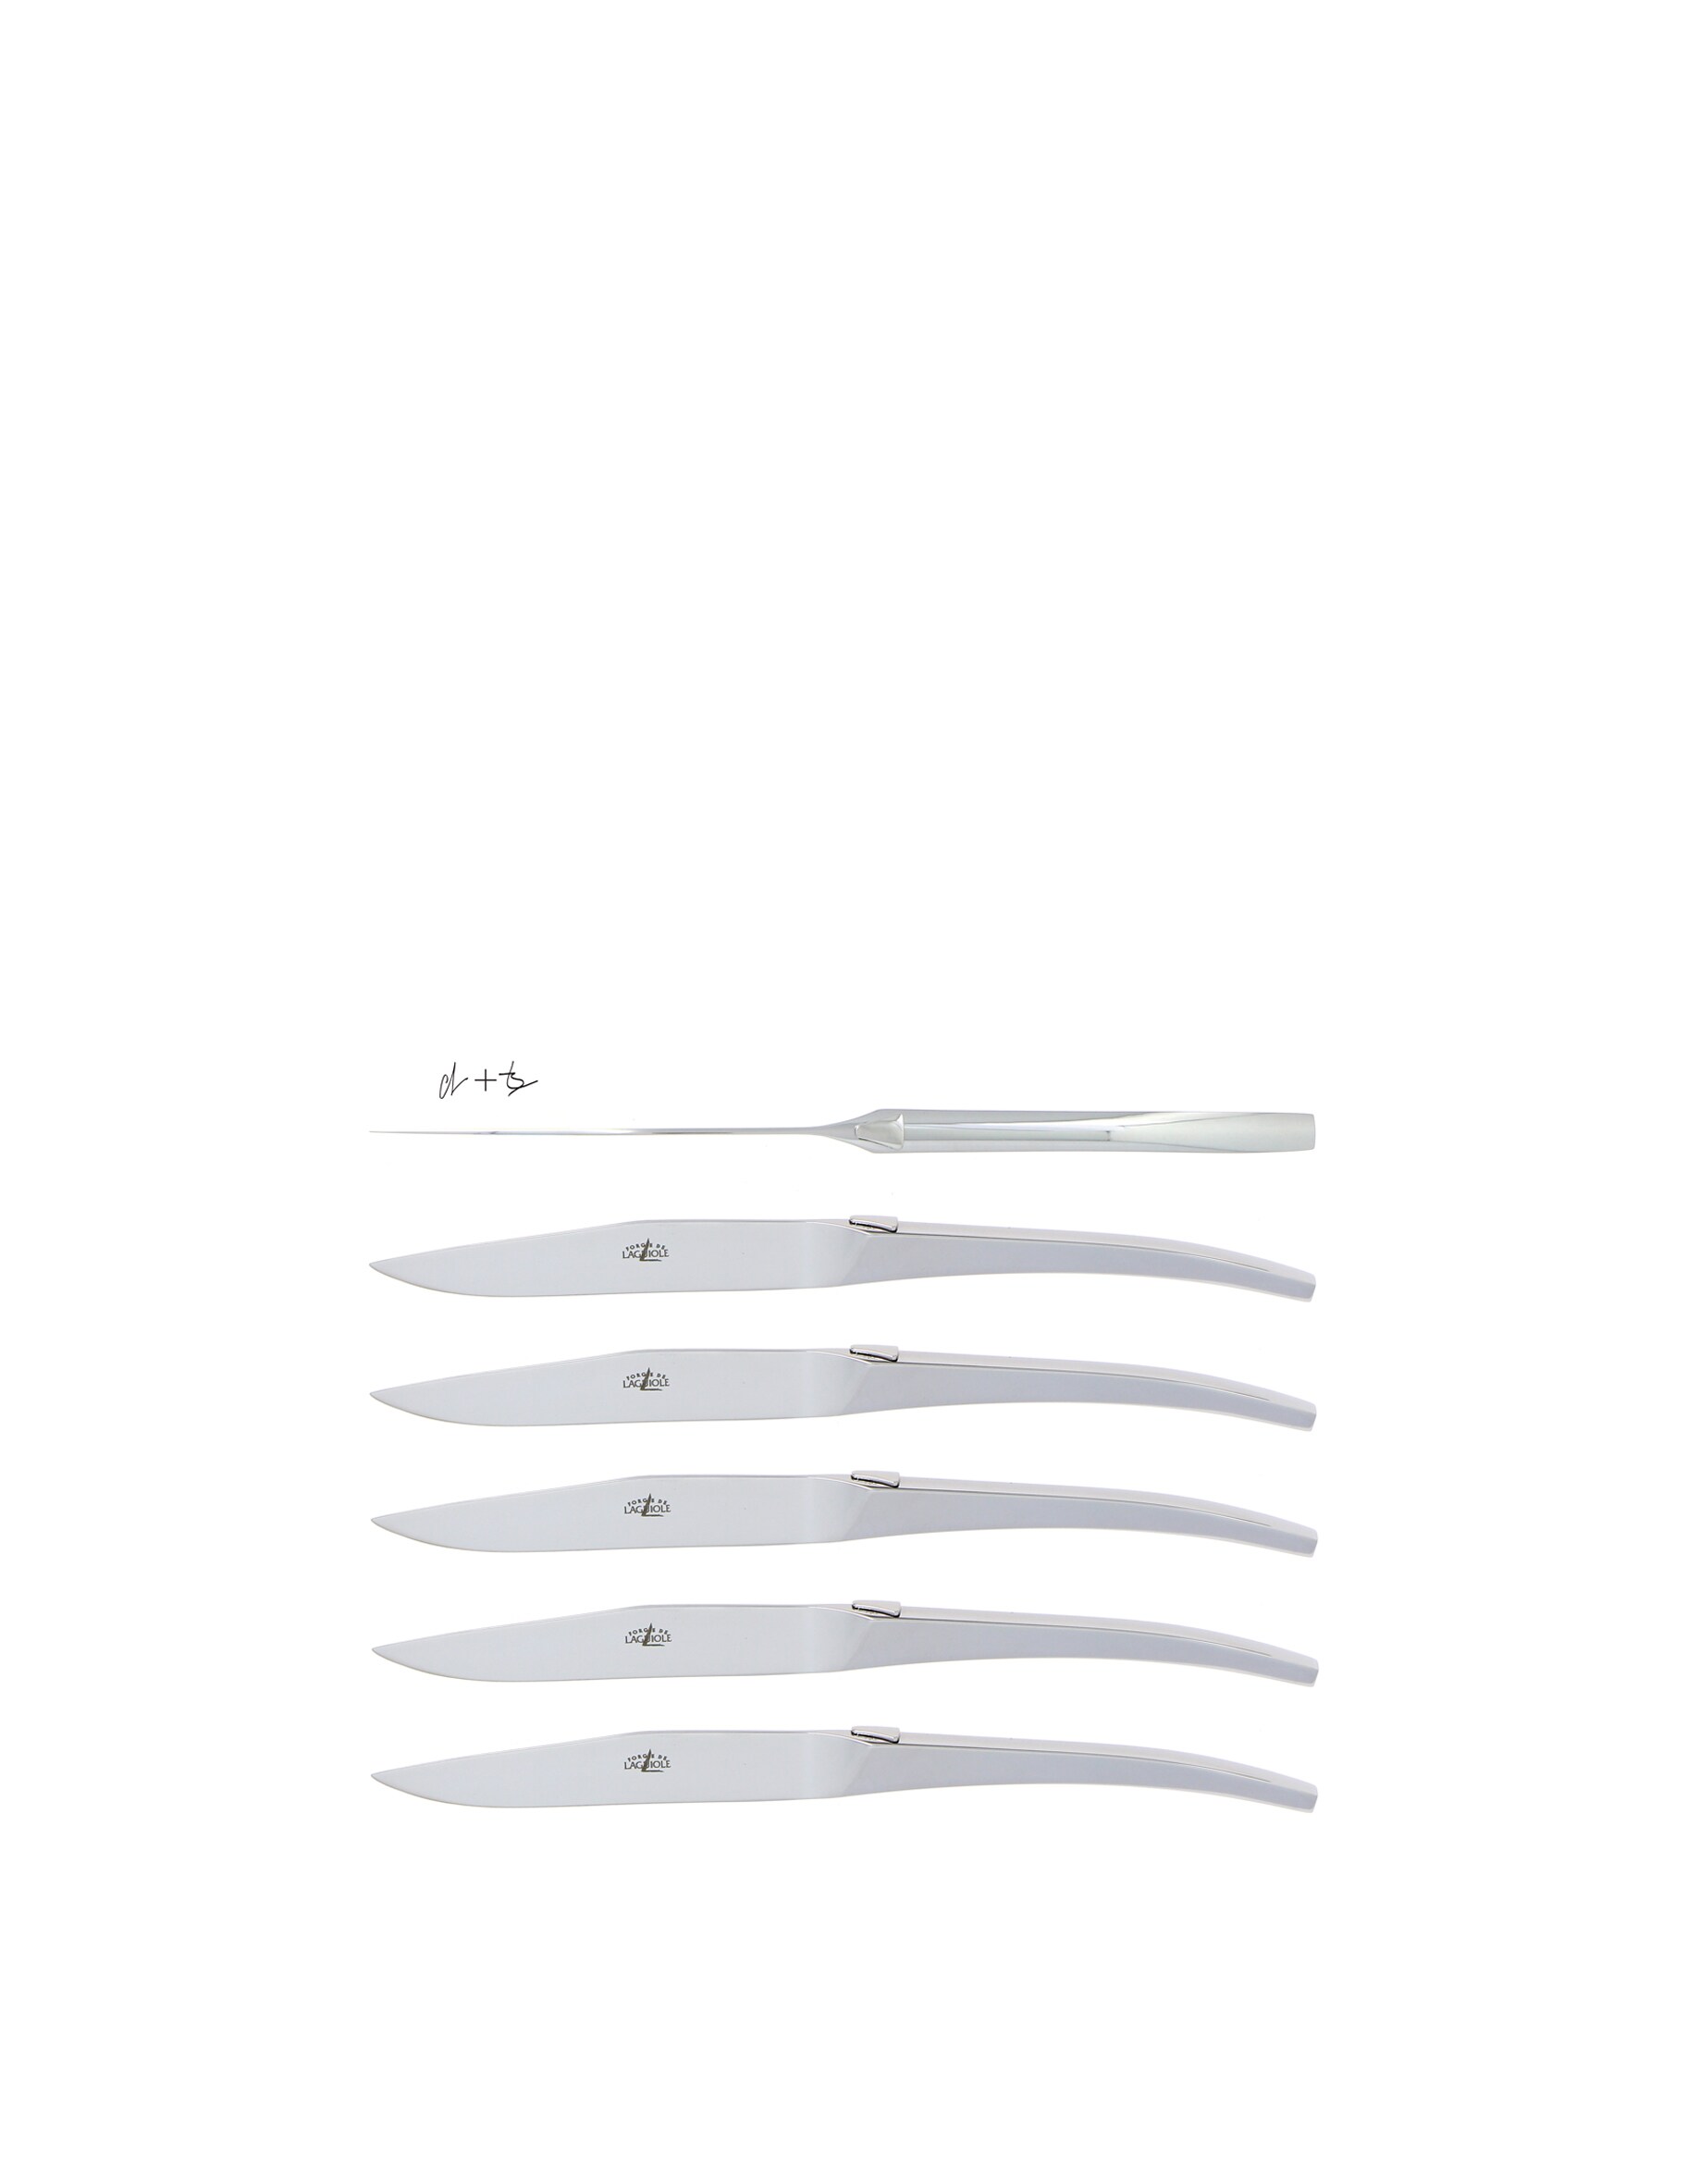 Набор столовых ножей Lefebvre из нержавеющей стали (6 шт.), серый Forge De Laguiole сабля en aubrac sabre сhampagne olivier для сабража 40 см cms99oli hzb1 forge de laguiole